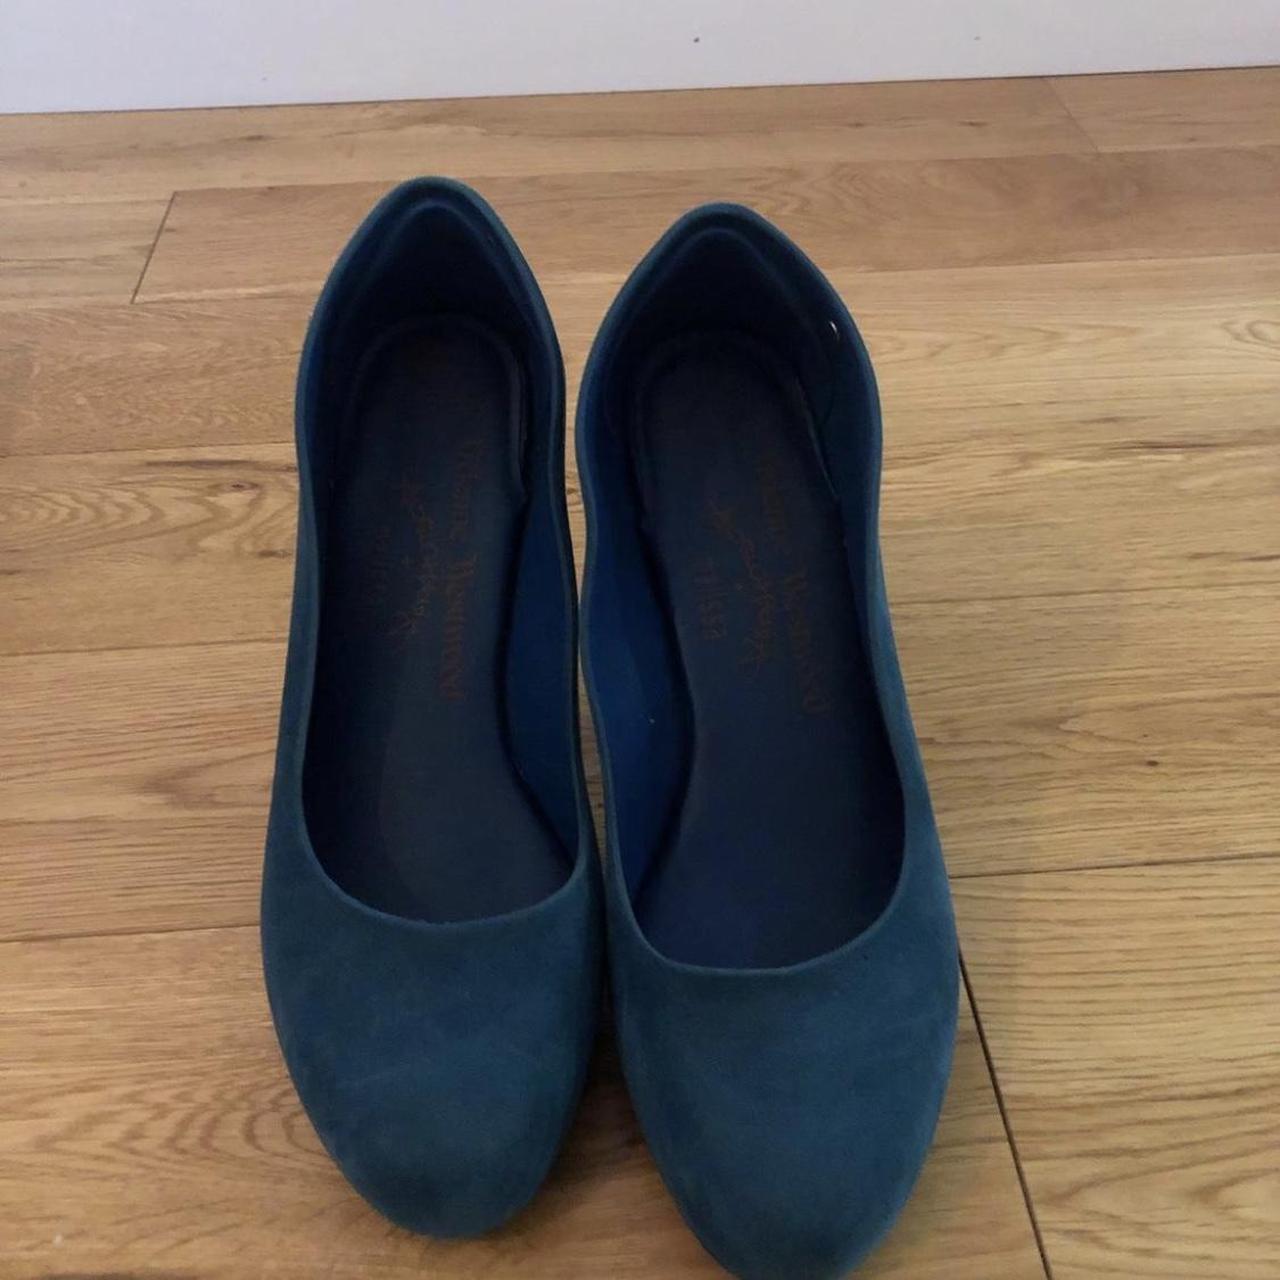 Vintage Vivienne Westwood heels bought for £130 - Depop